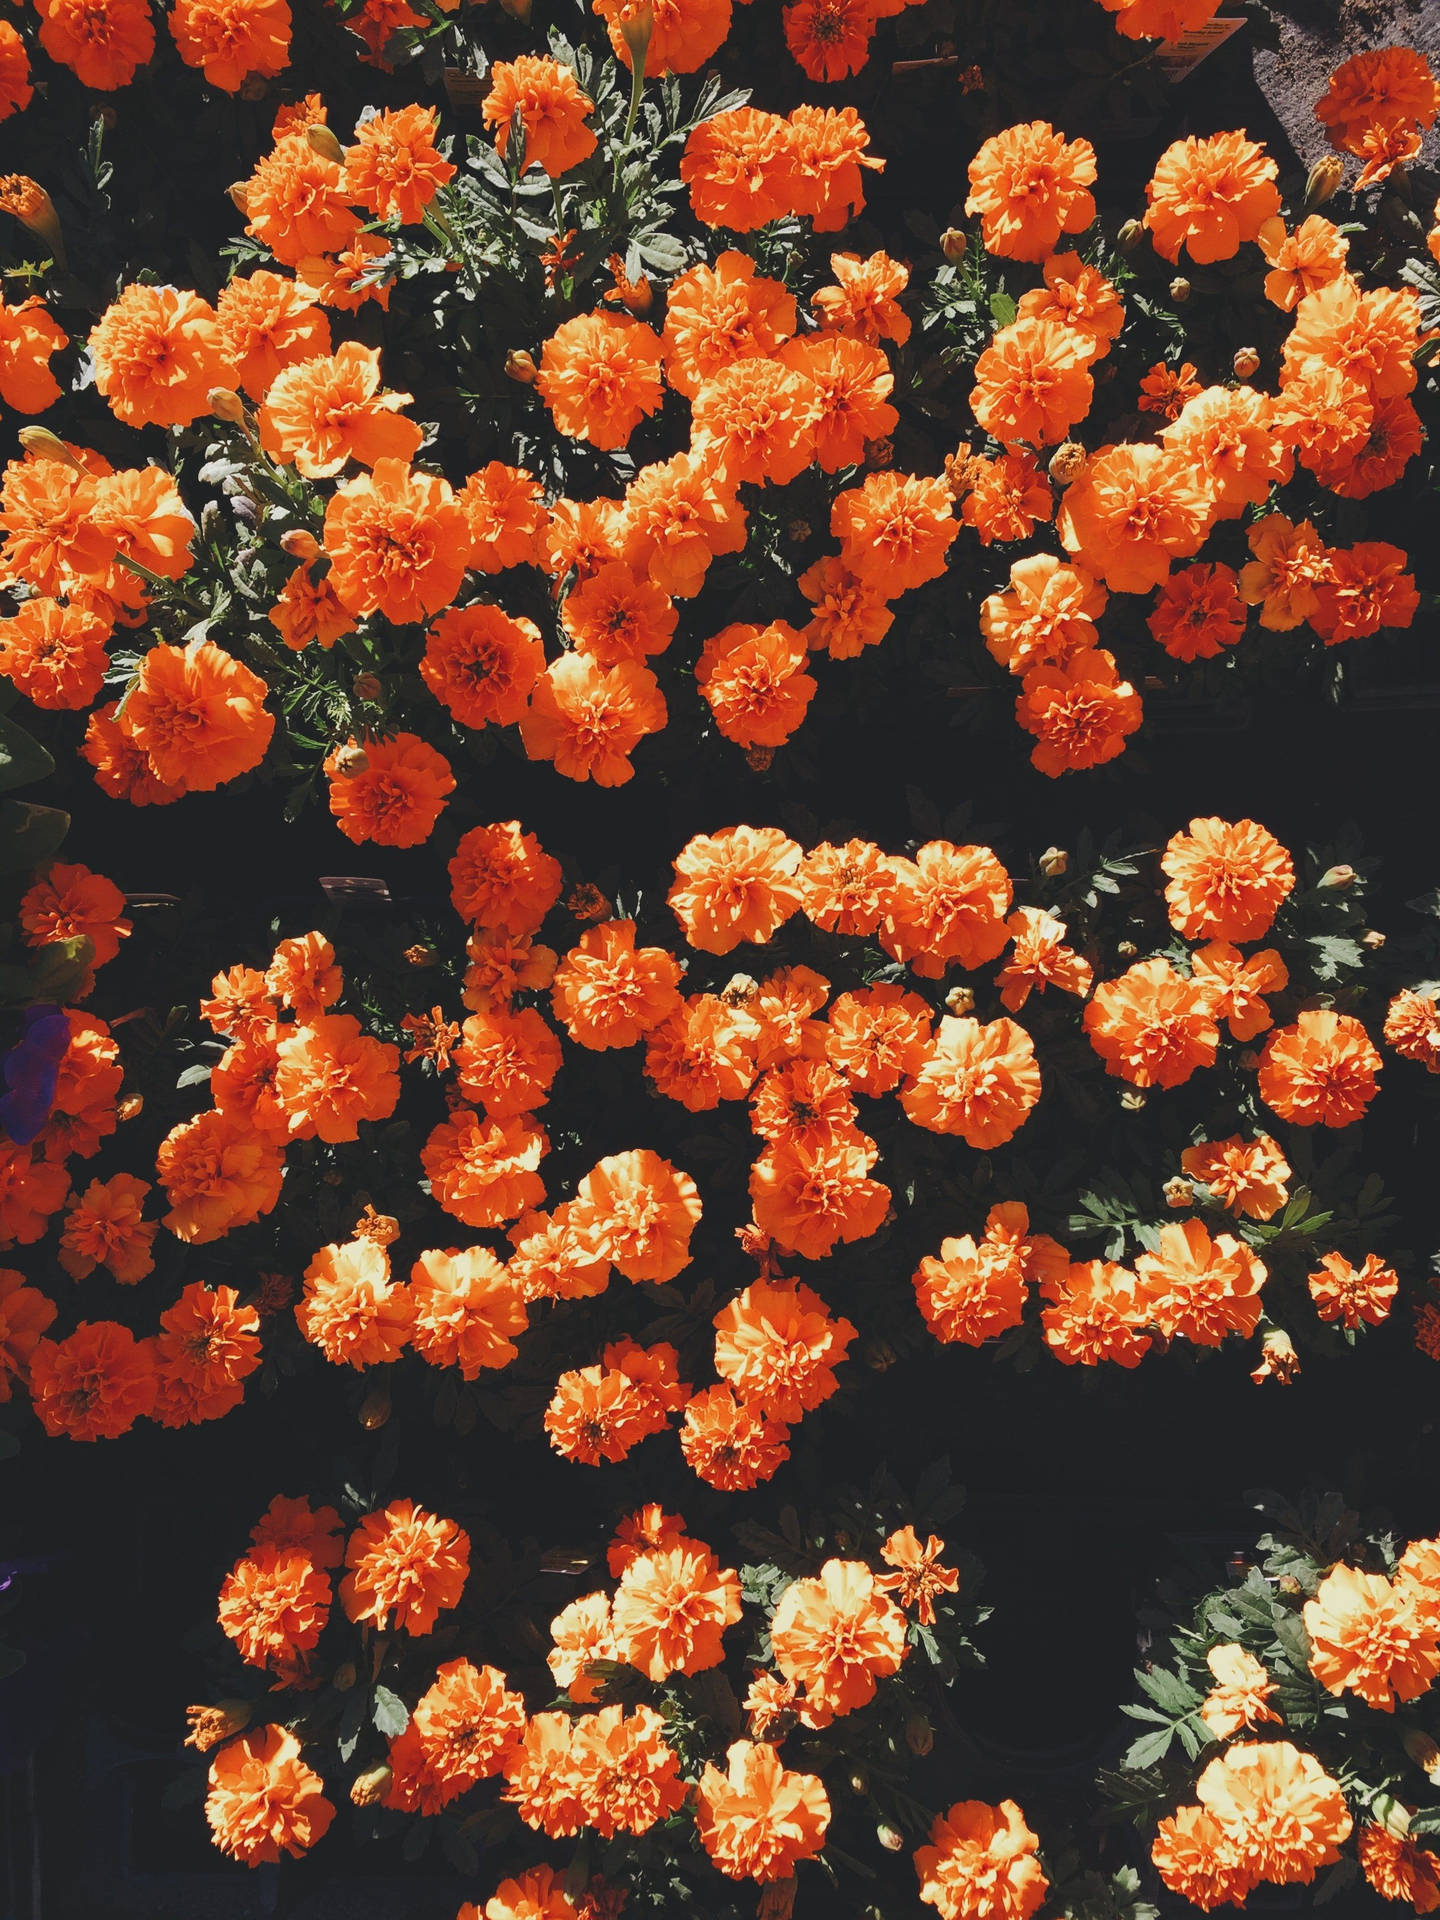 Những bông hoa tuyệt đẹp trong hình ảnh của Ästhetische Blumen sẽ khiến bạn thích thú với vẻ đẹp của thiên nhiên và sự tinh tế trong những chi tiết nhỏ. Hãy để Ästhetische Blumen đưa bạn đến với một thế giới đầy năng lượng và sự tươi mới.